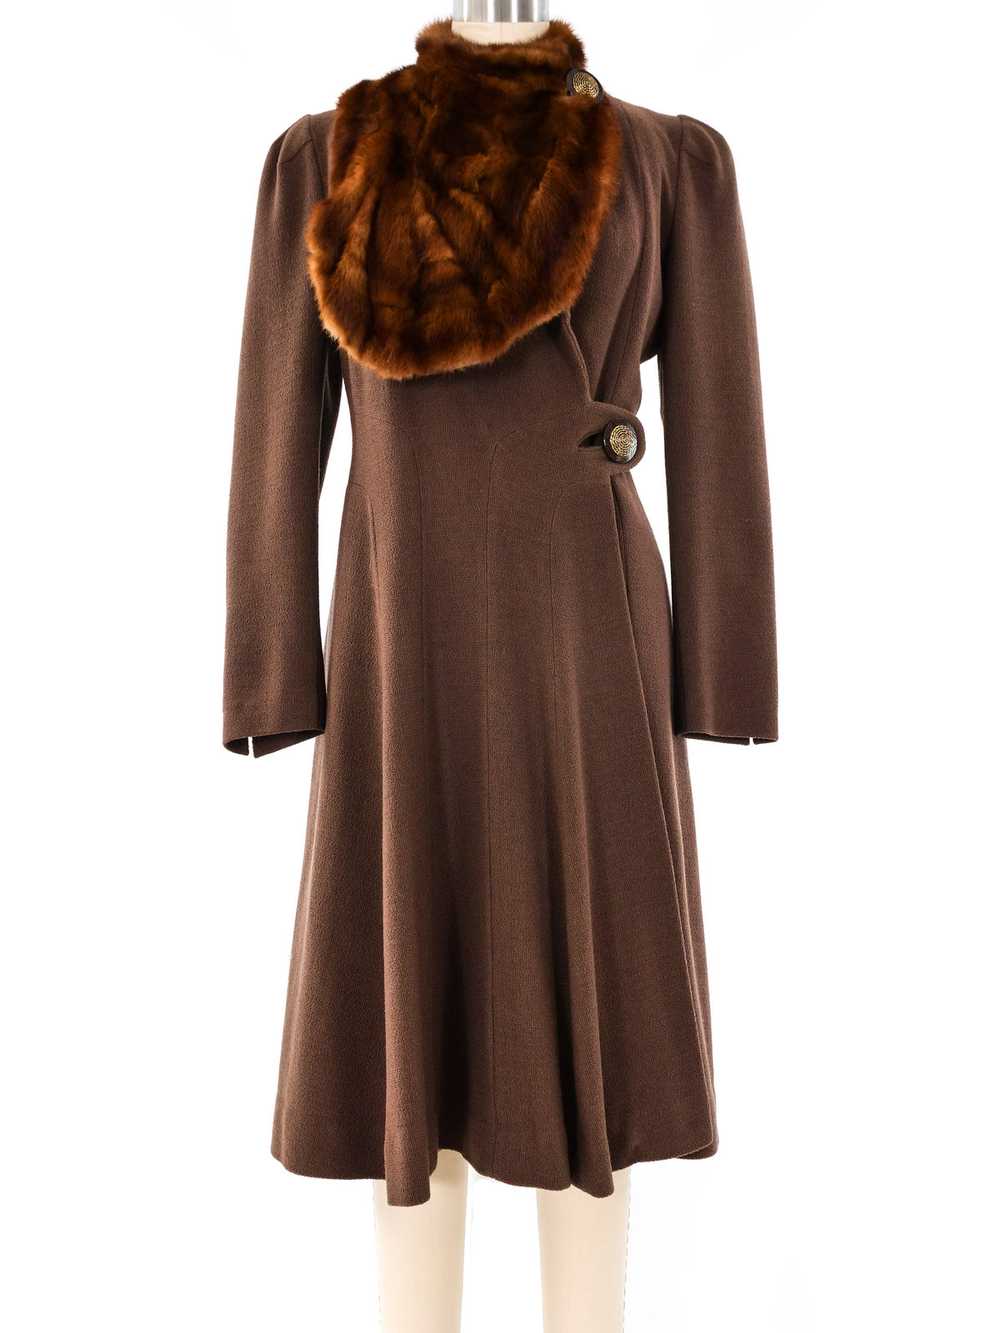 1940's Brown Coat With Fur Trim Bib - image 1